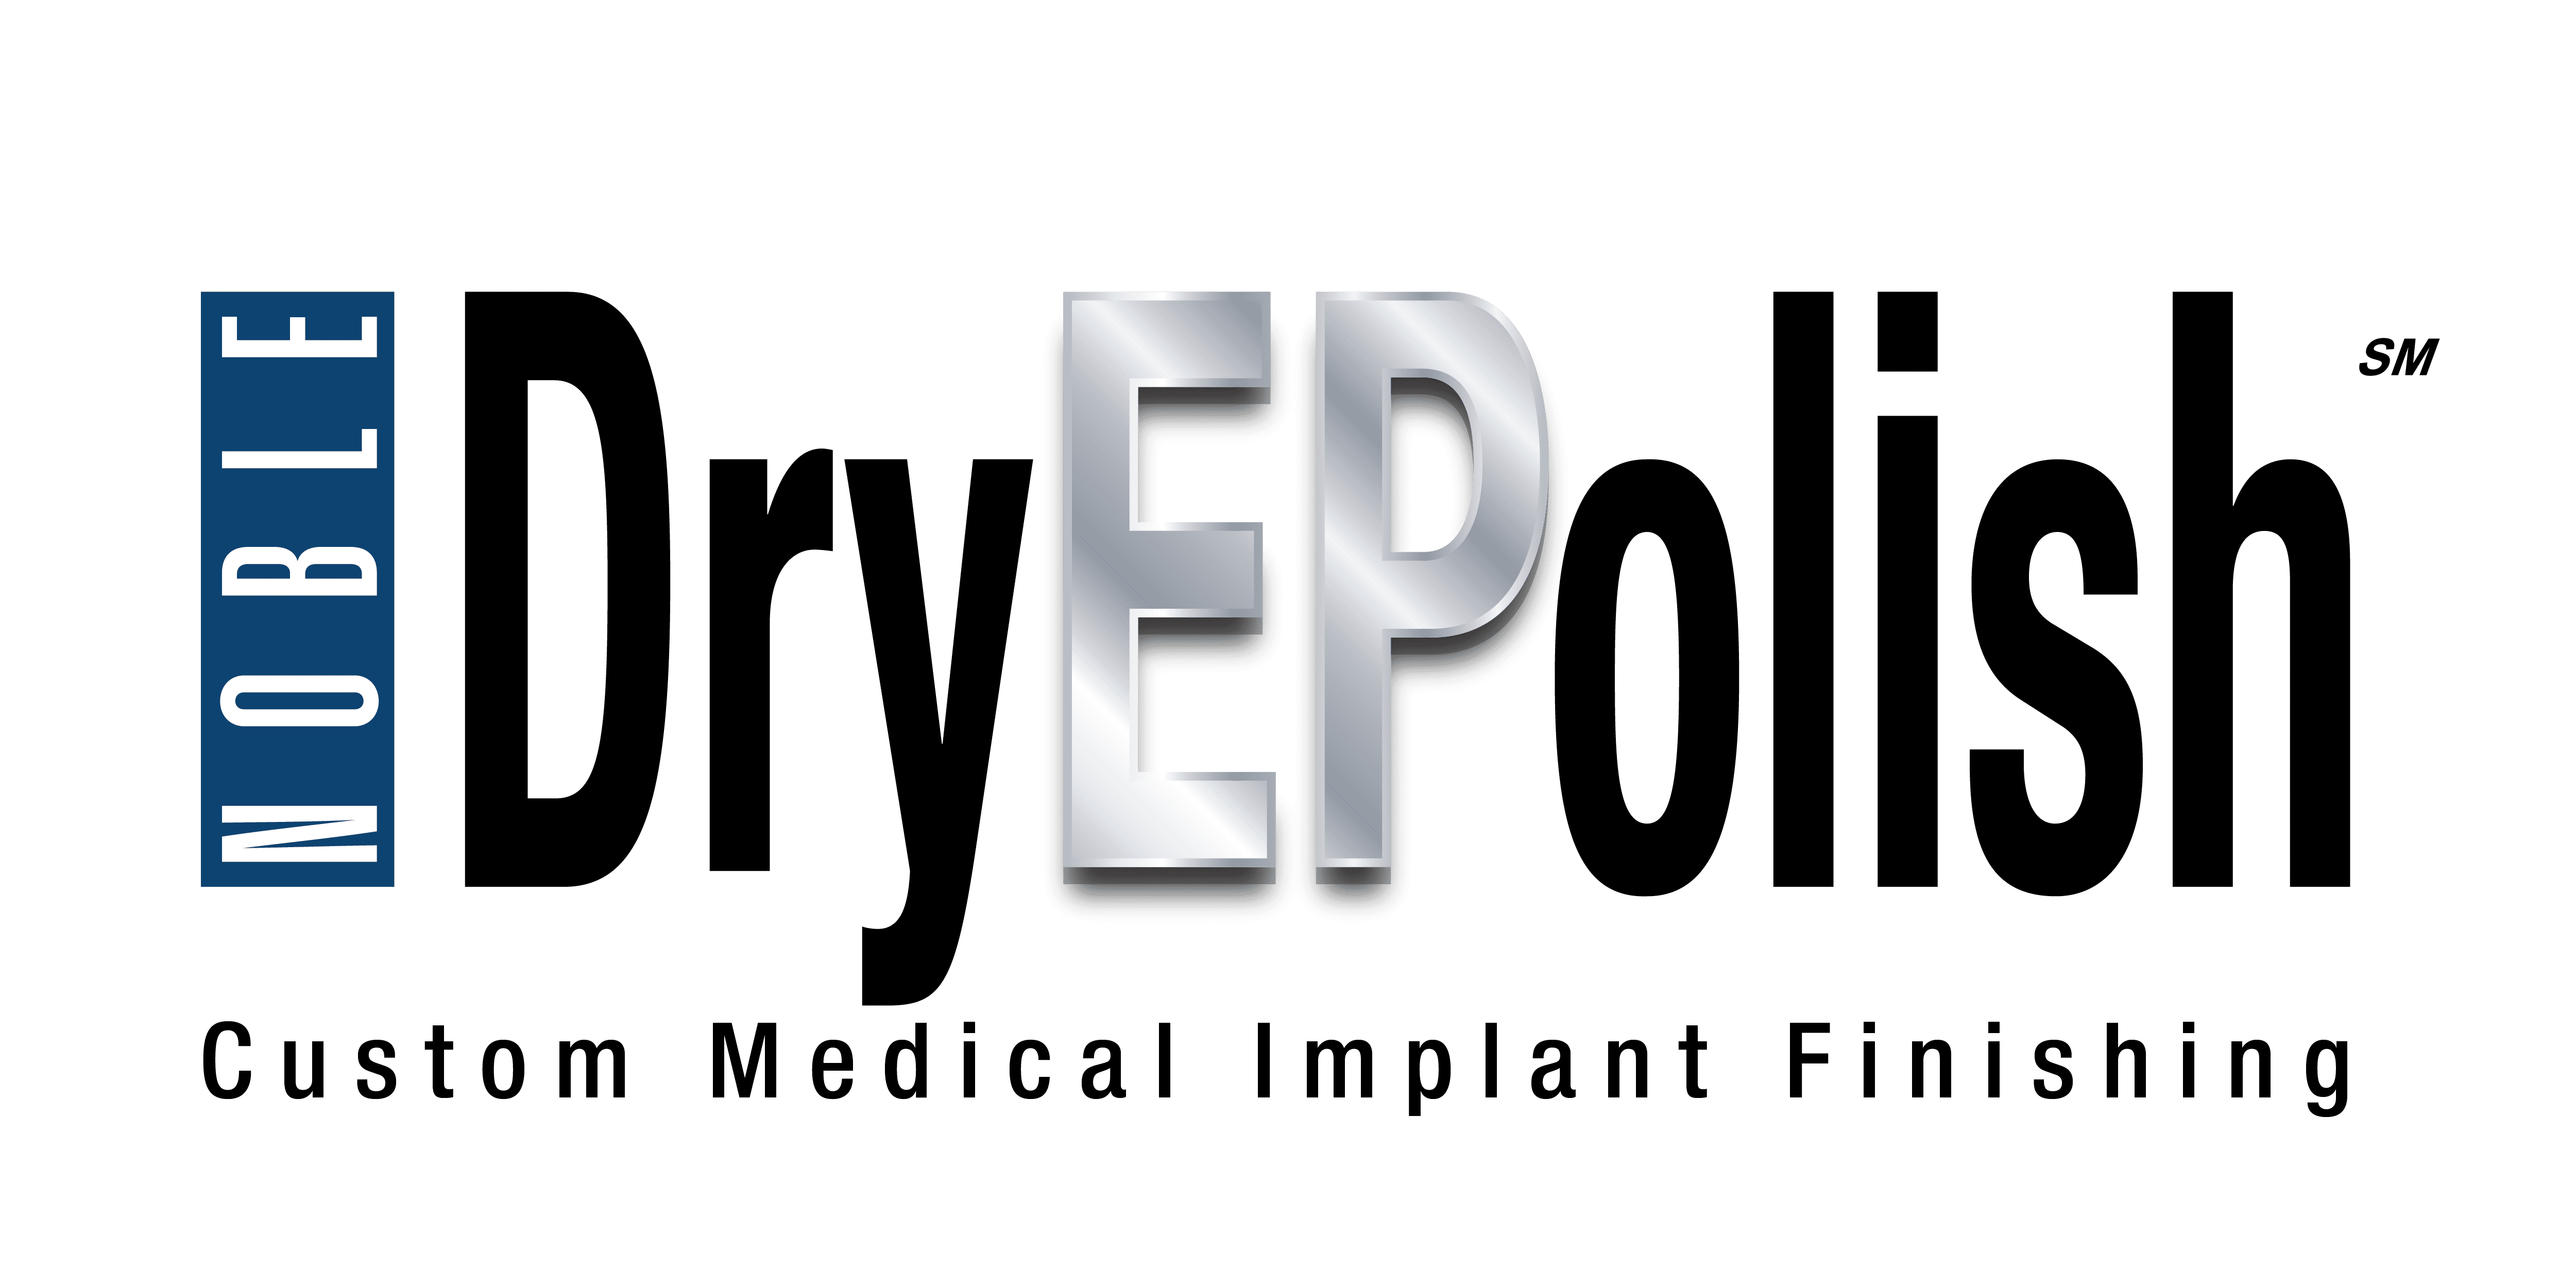 Noble Dry Electropolishing Custom Medical Implant Finishing Technology Logo